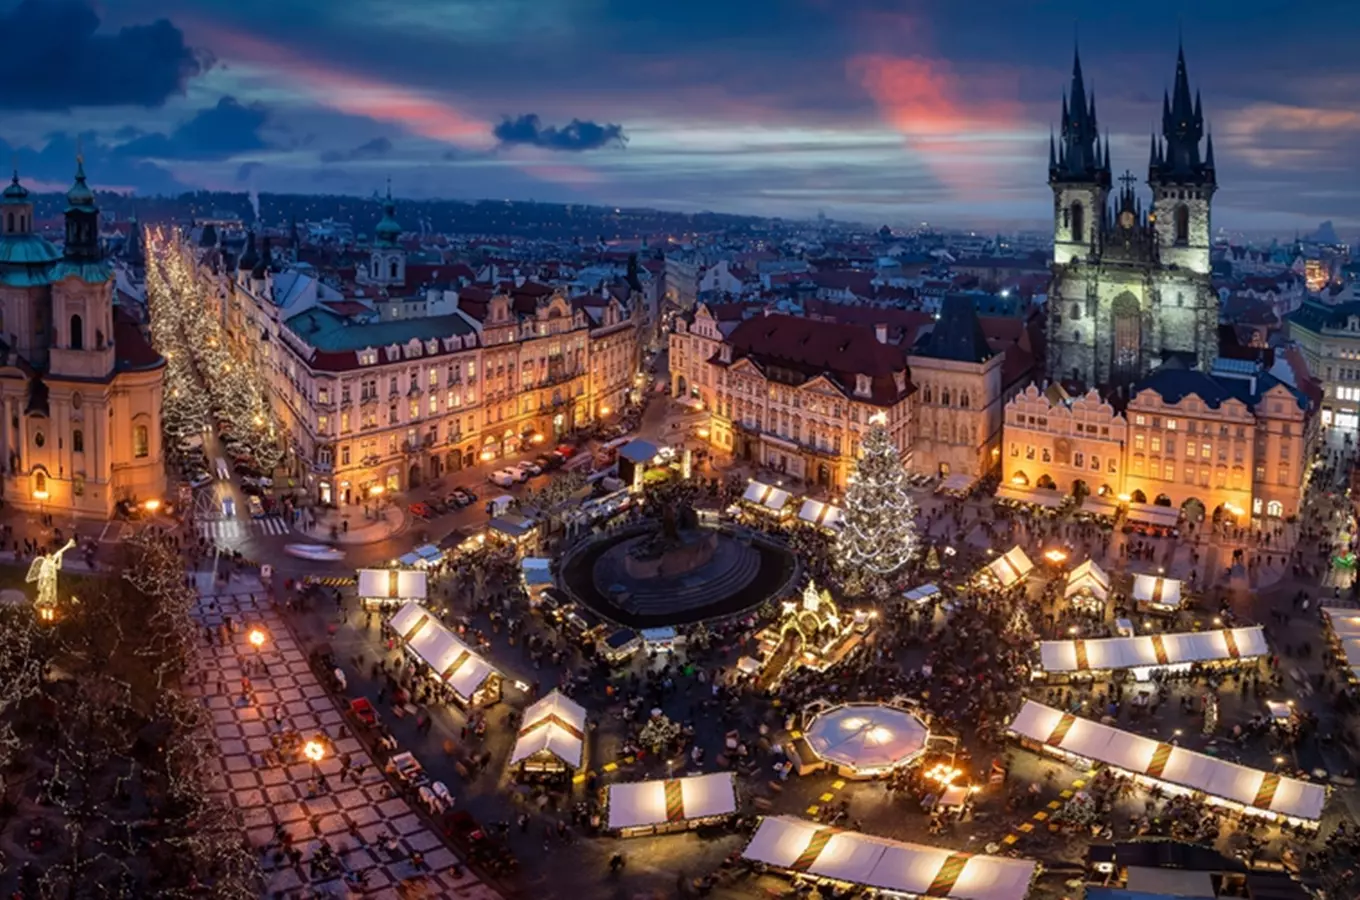 Vánoce v Praze: vychutnejte si magickou vánoční atmosféru!